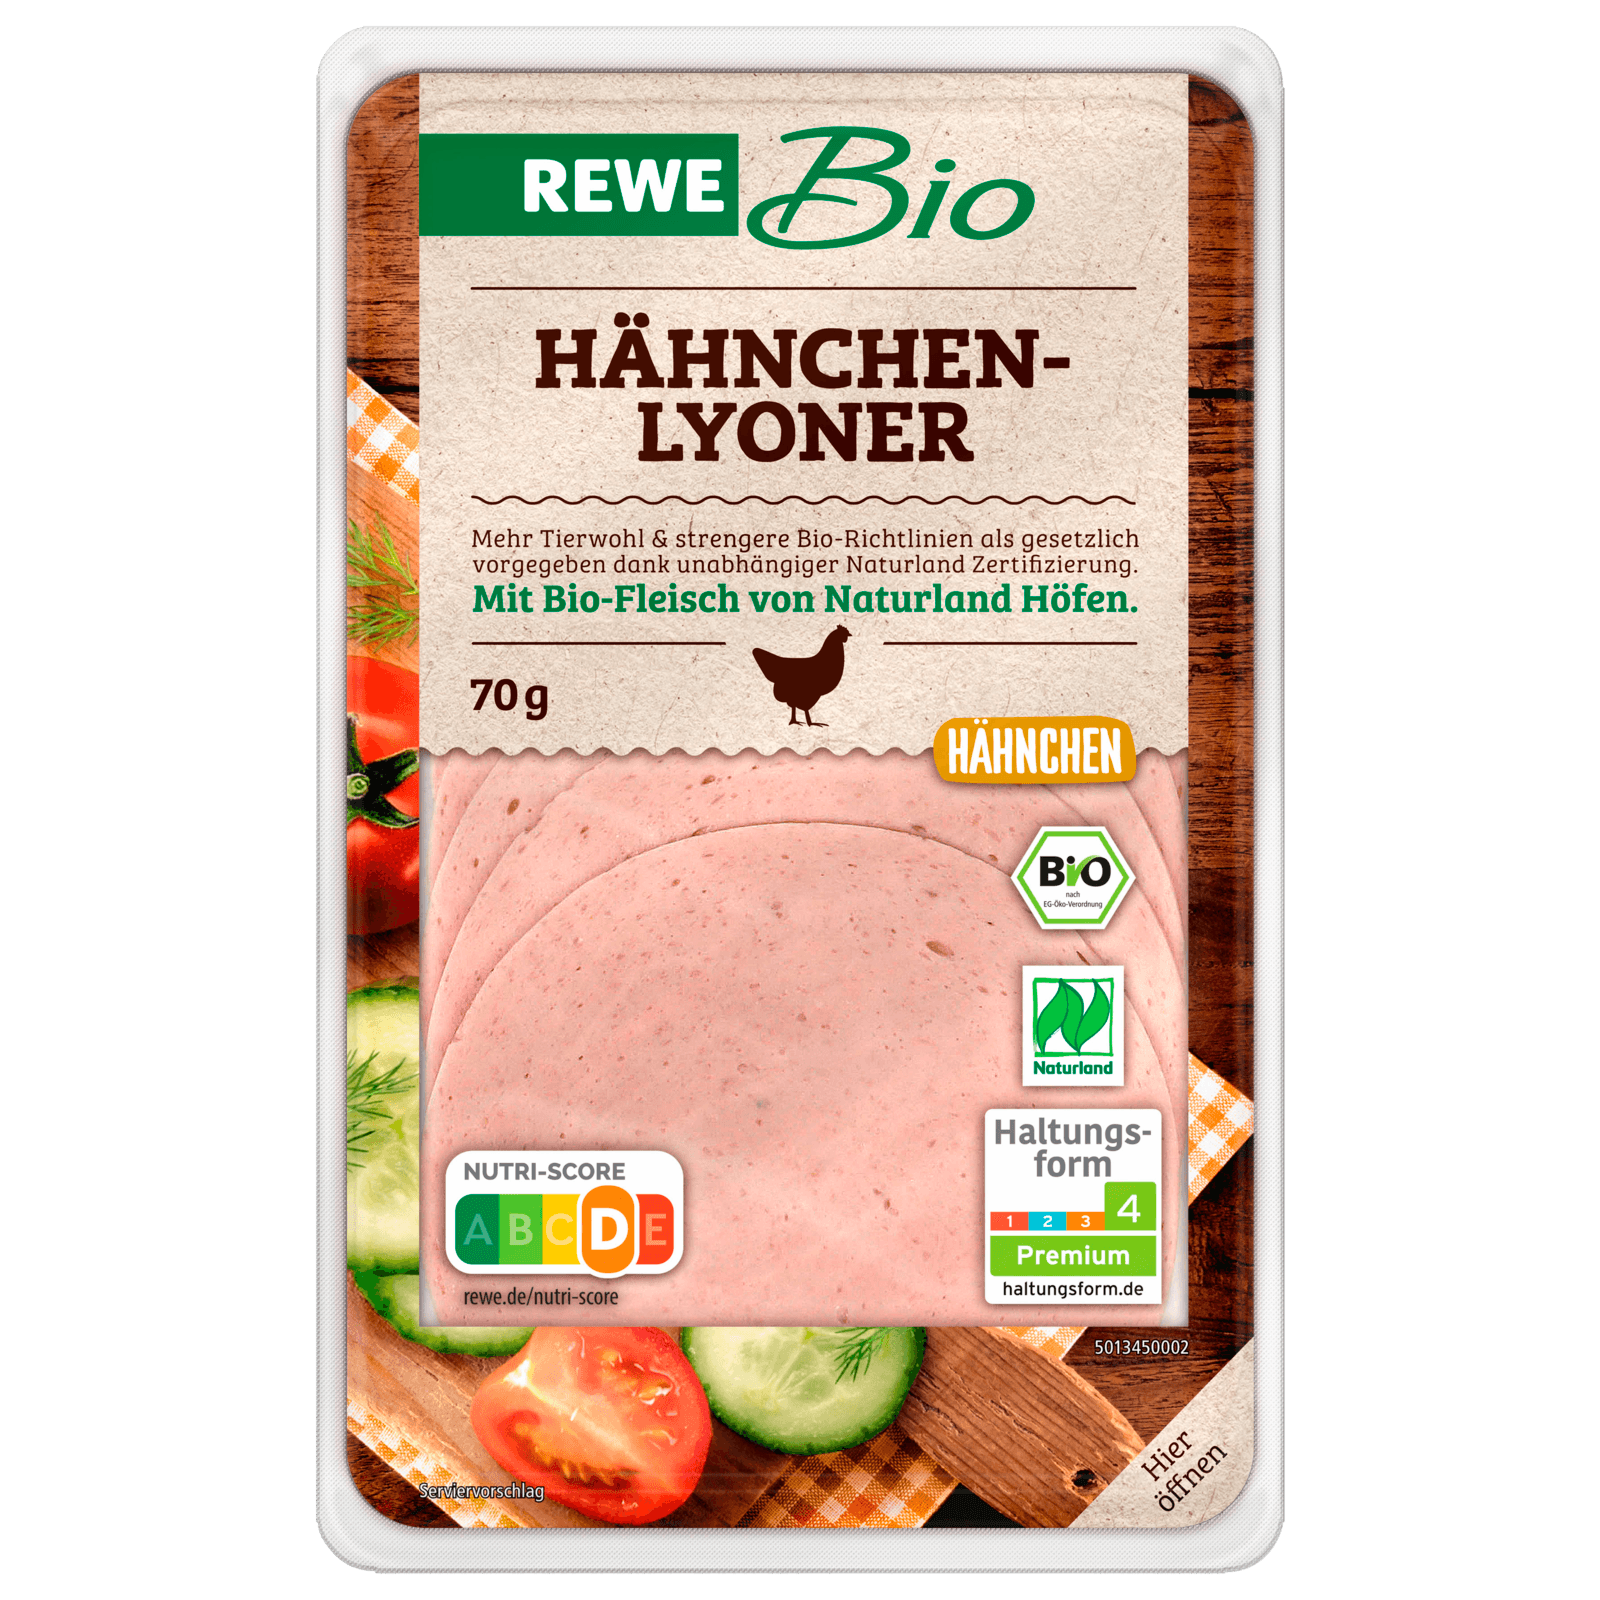 REWE Bio Hähnchen-Lyoner70g